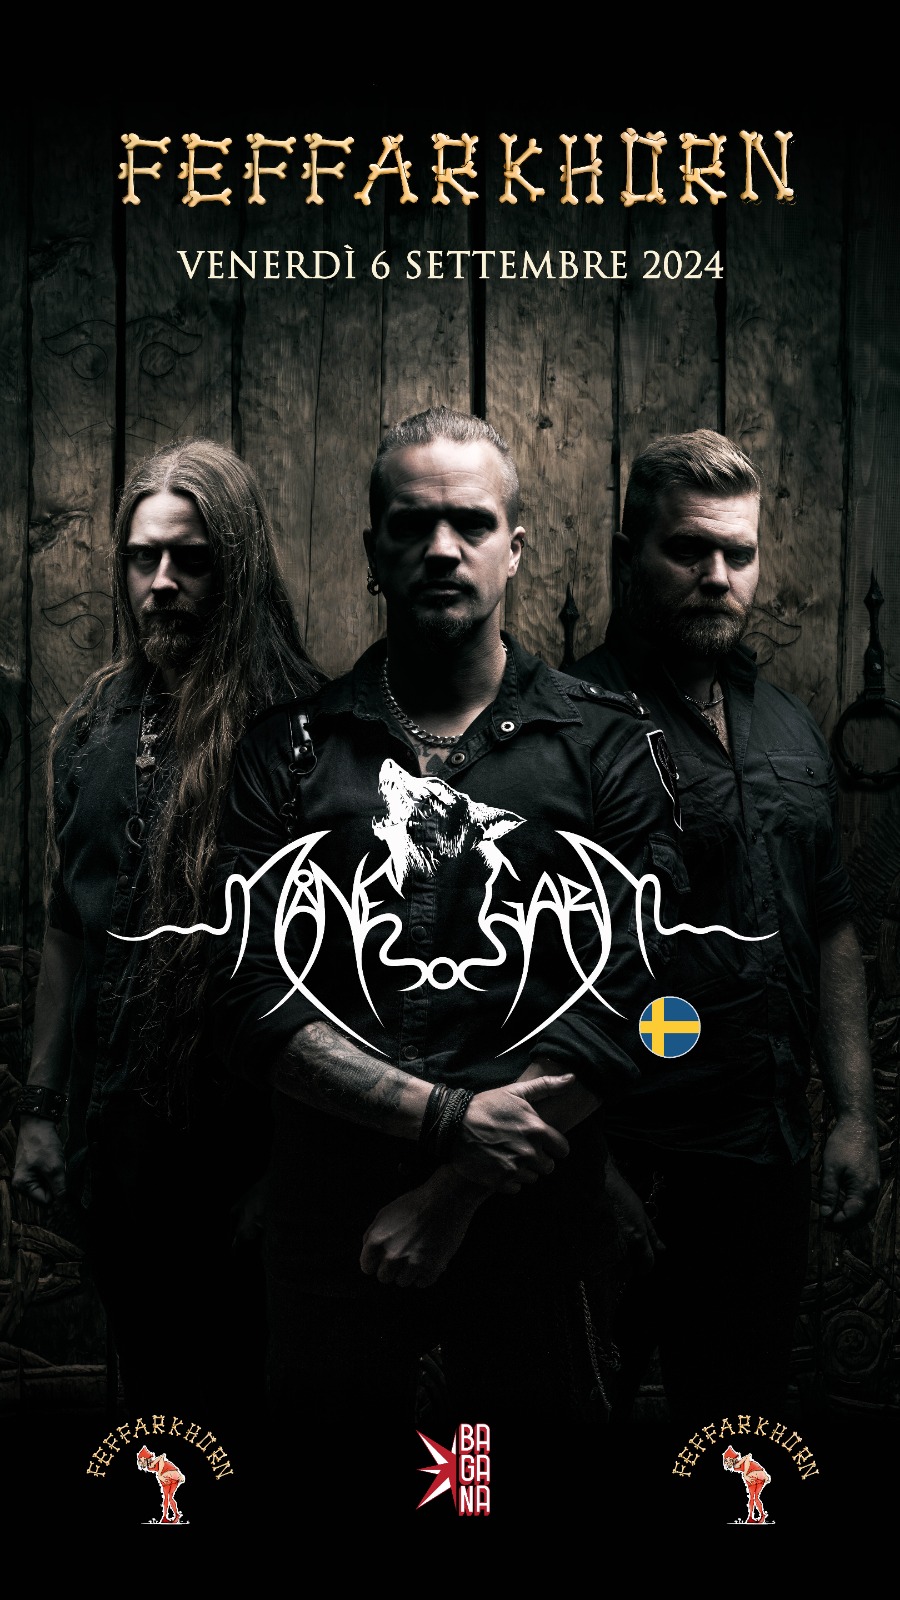 Månegarm: Pionieri del viking pagan folk metal venerdì 6 settembre al Feffarkhorn